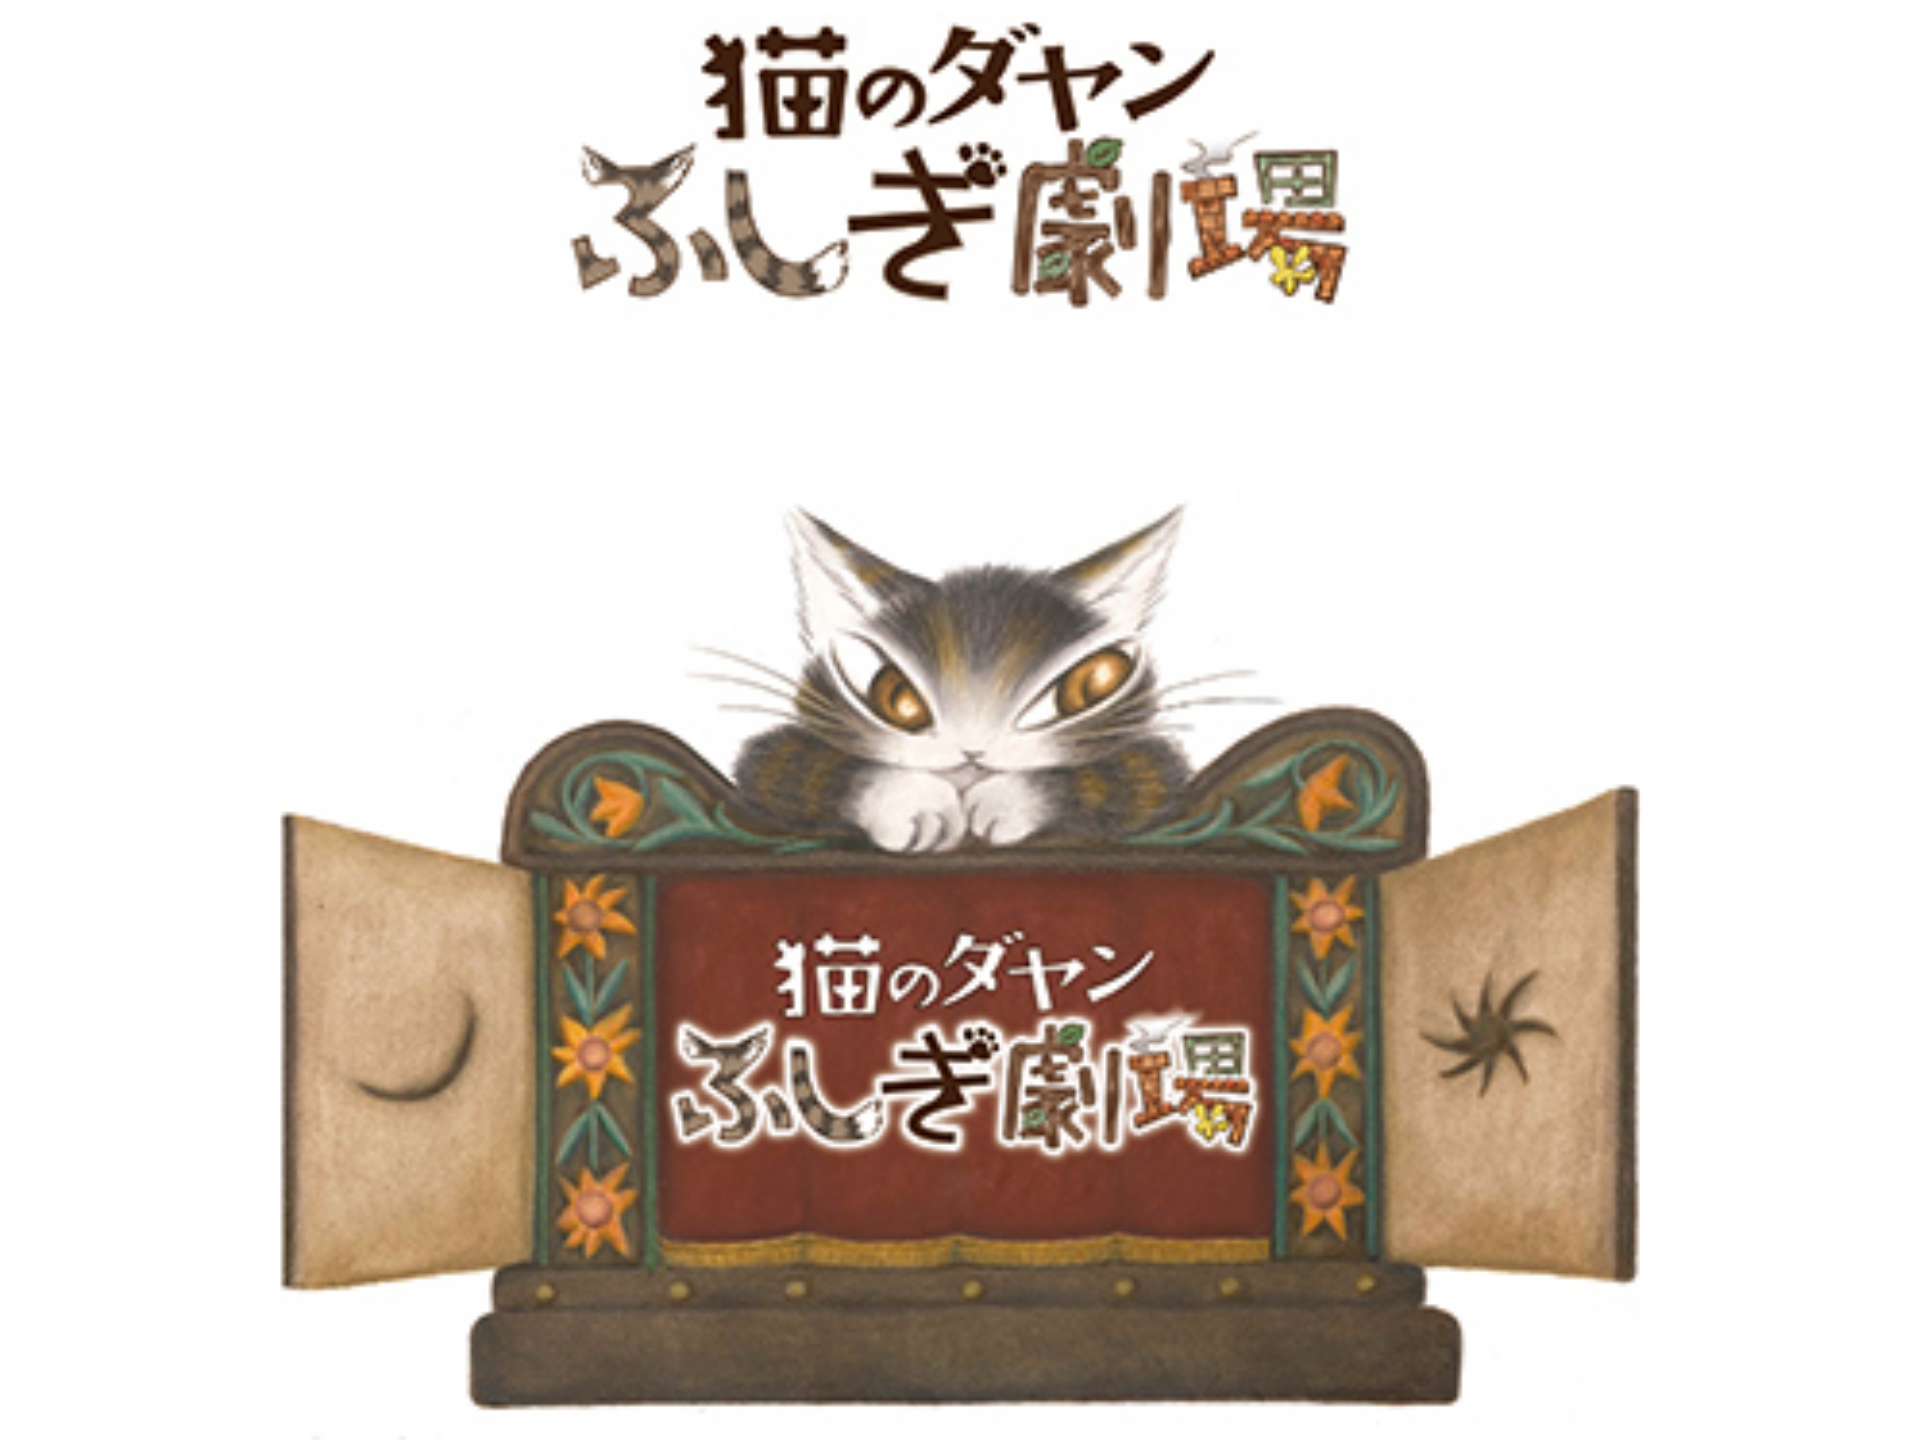 アニメ 猫のダヤン ふしぎ劇場 の動画まとめ 初月無料 動画配信サービスのビデオマーケット